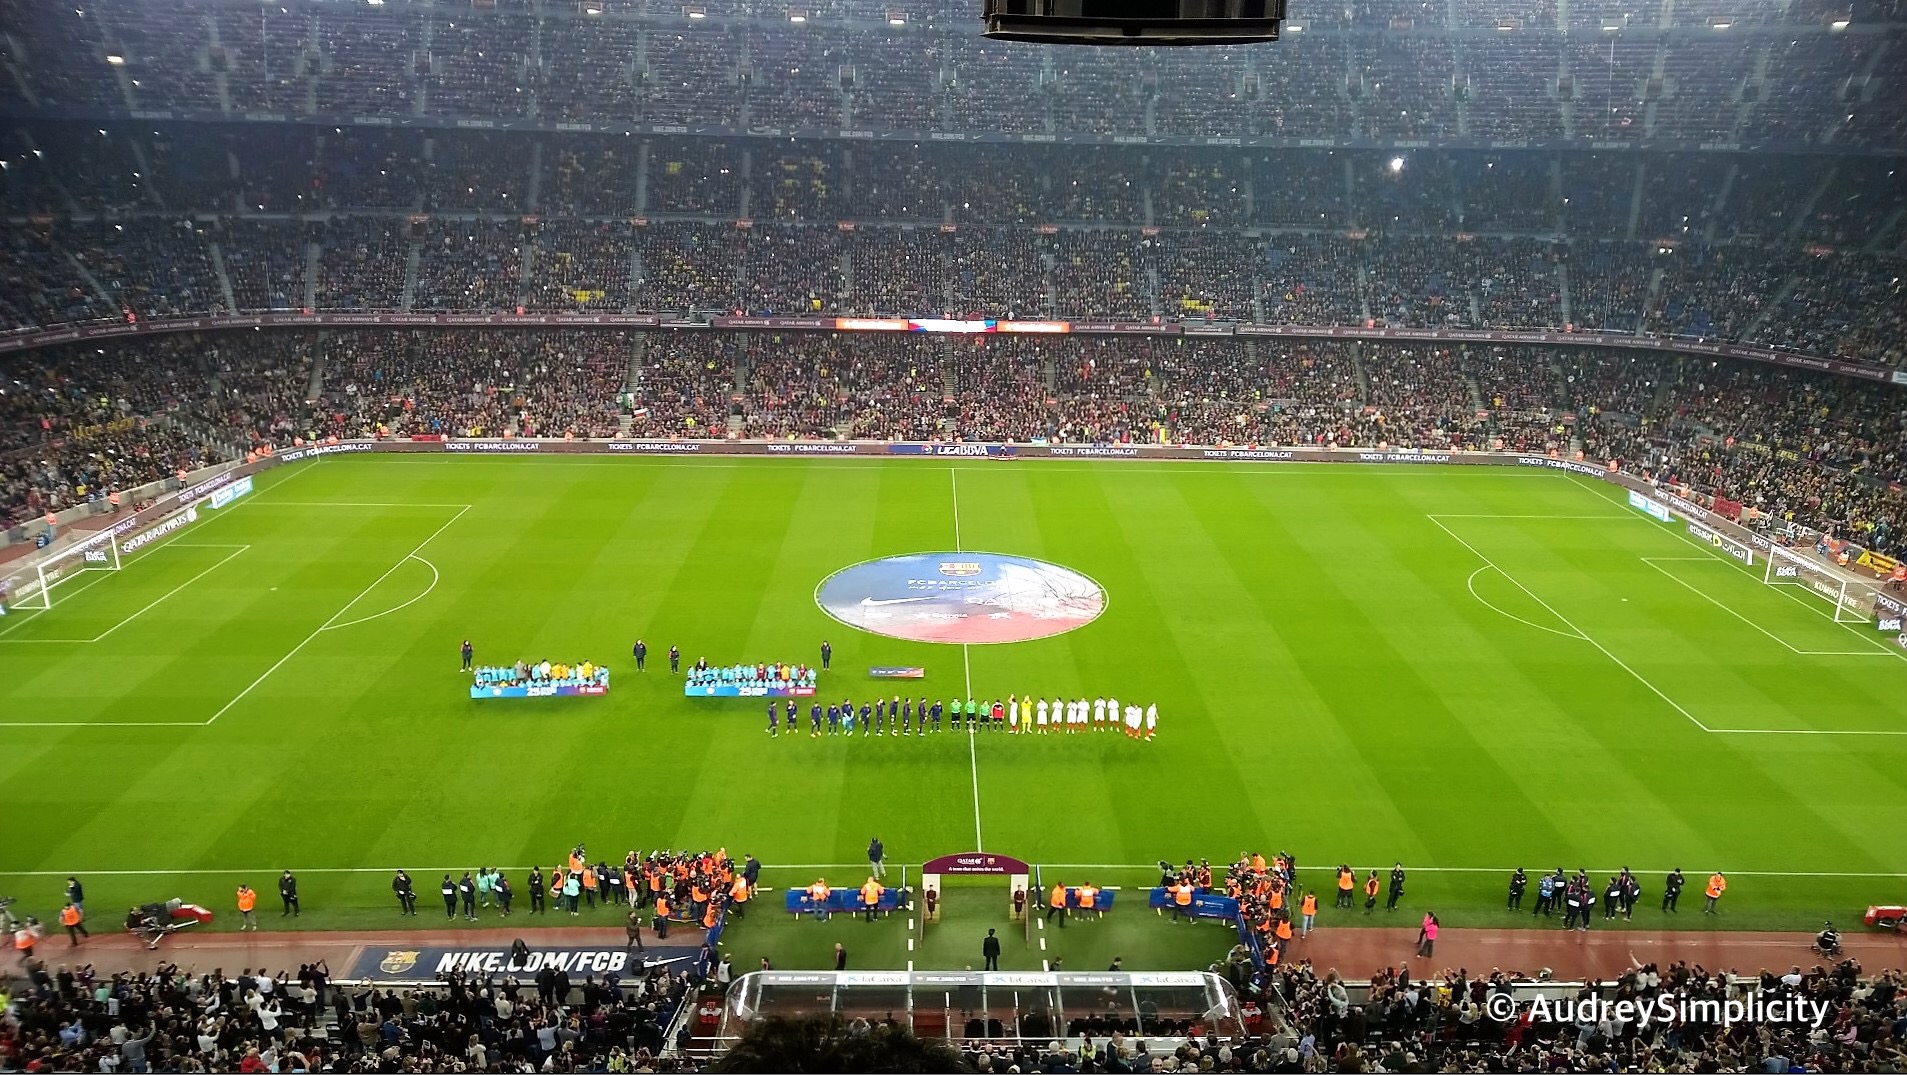 FC Barcelona match taken by AudreySimplicity